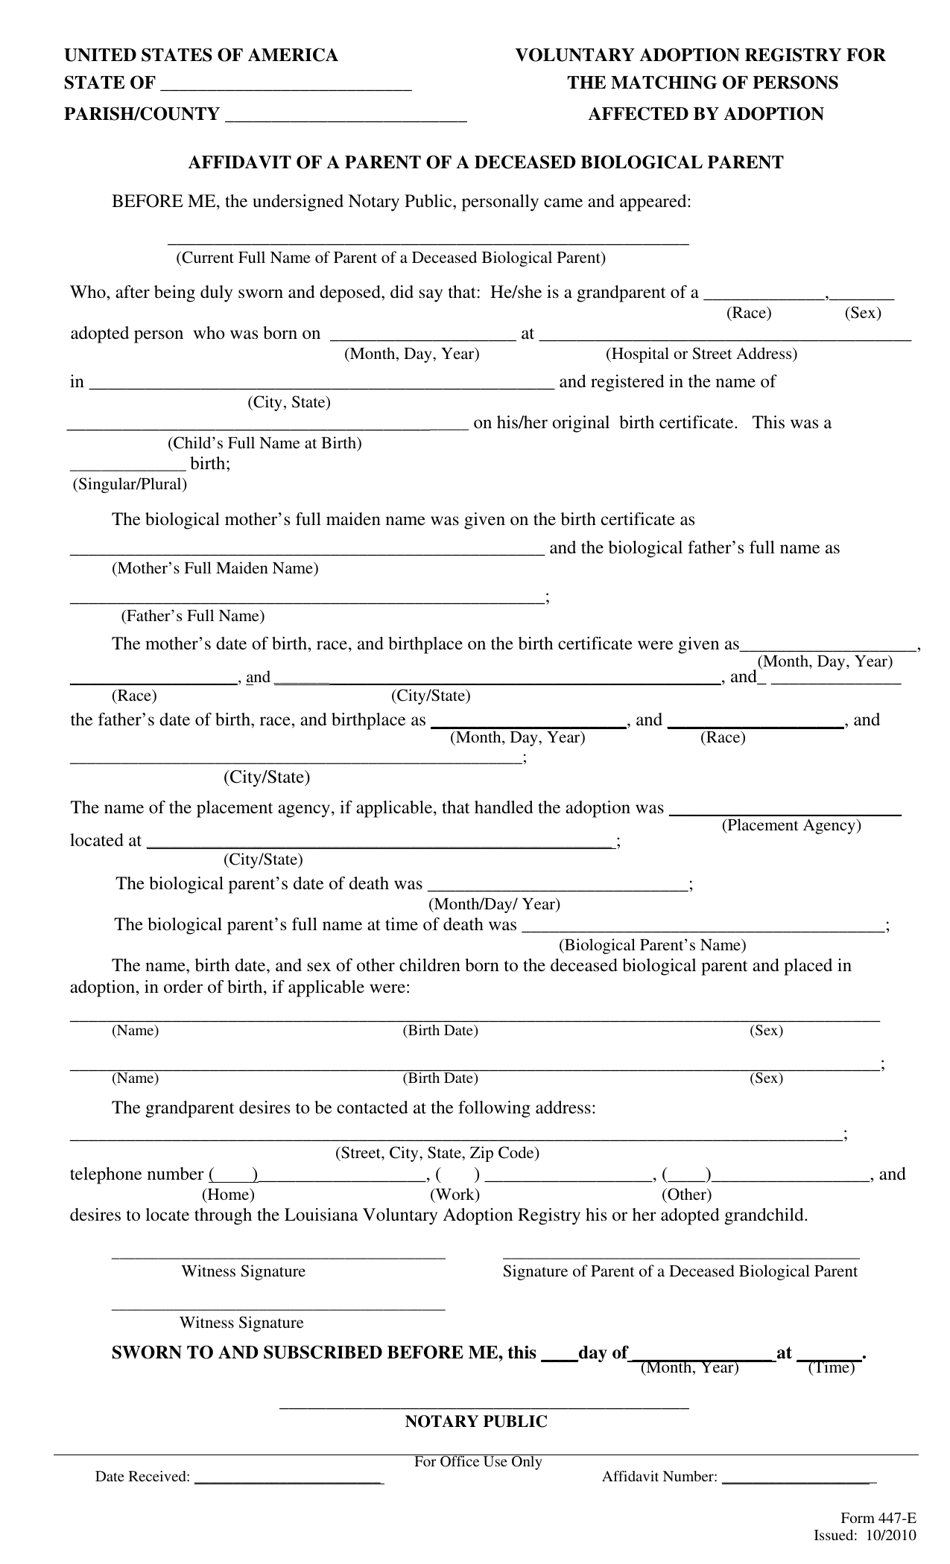 Form 447-E Affidavit of a Parent of a Deceased Biological Parent - Louisiana, Page 1